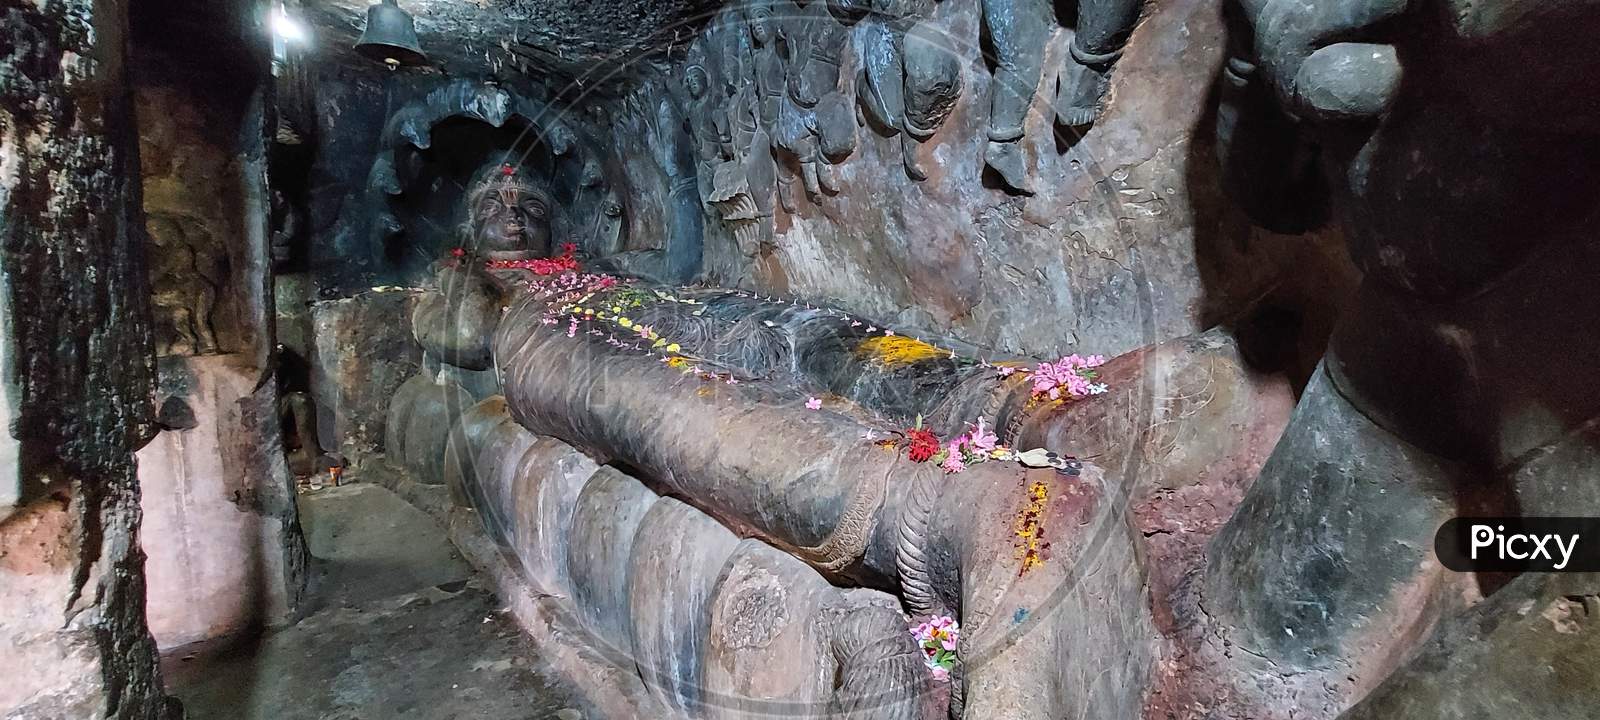 7th century sculptures of undavalli caves in Andra pradesh in india